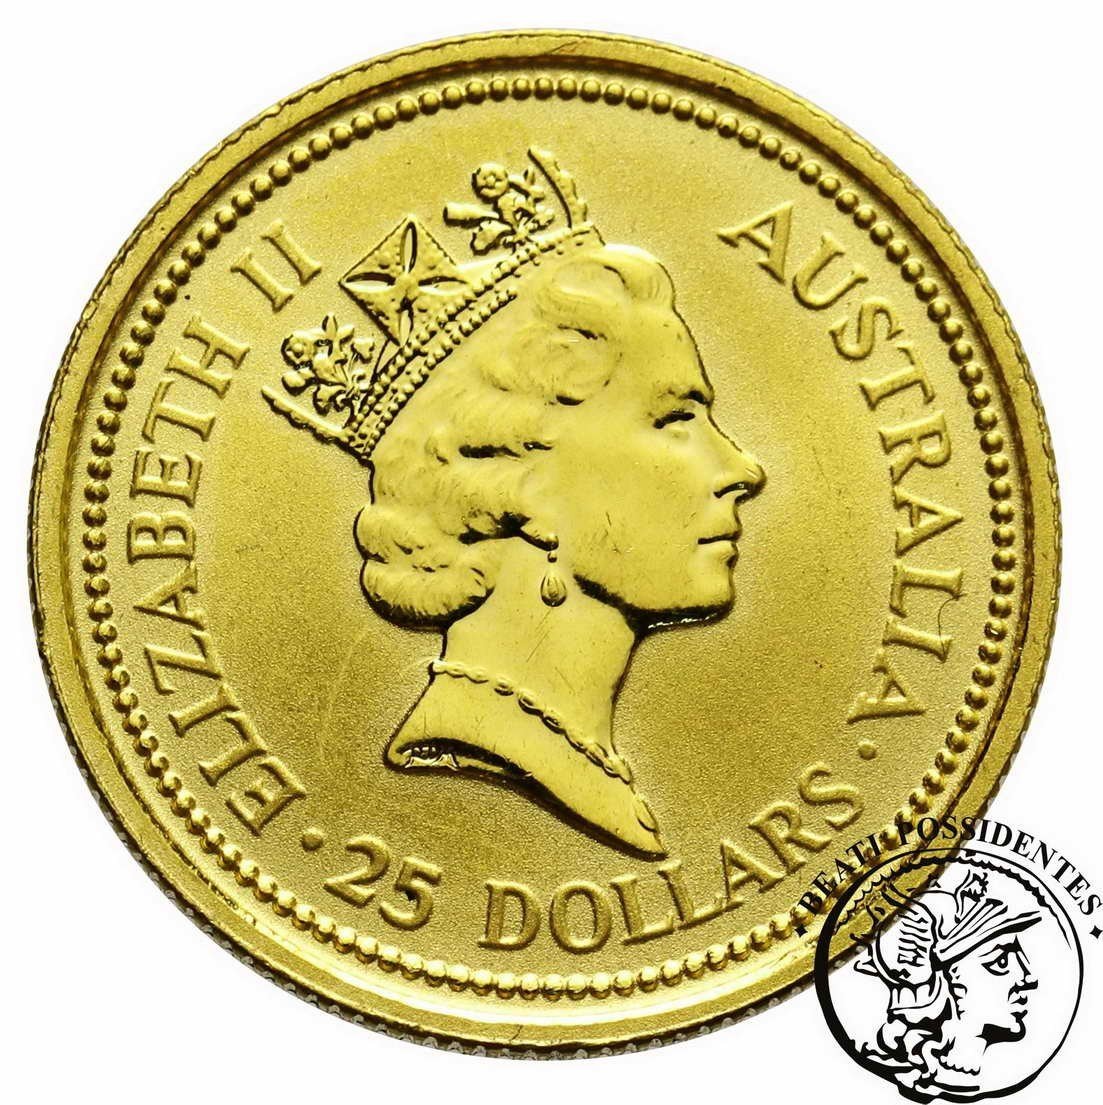 Australia 25 $ dolarów 1991 1/4 Oz Au 999,9 st. L-